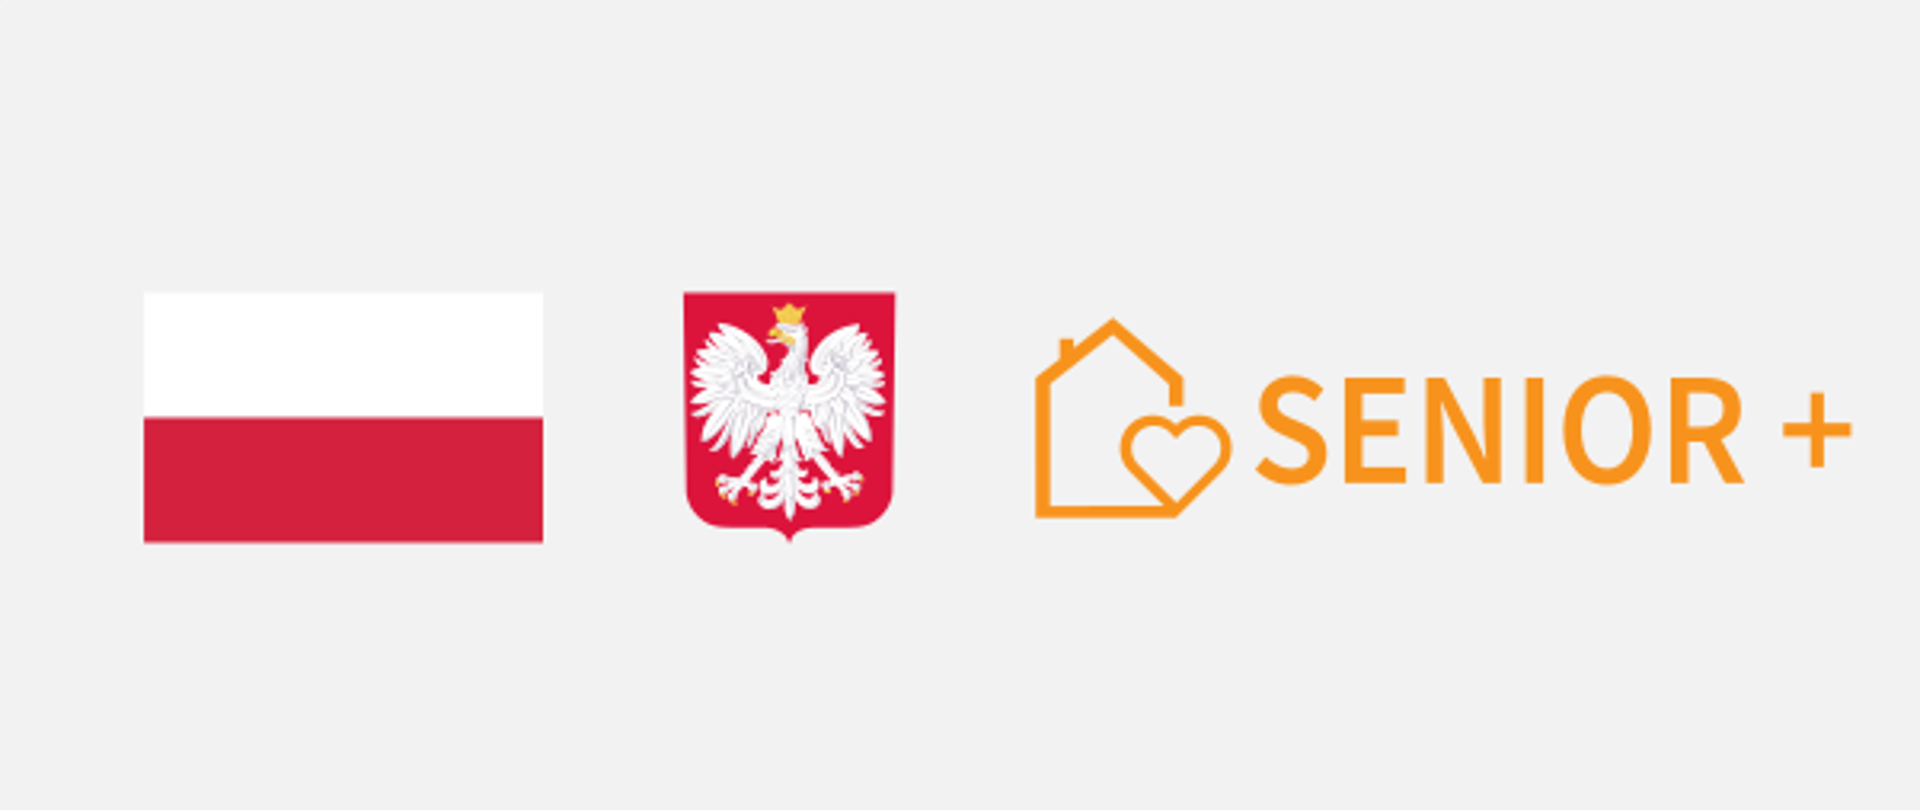 Flaga Polski, herb Polski, logo Senior+